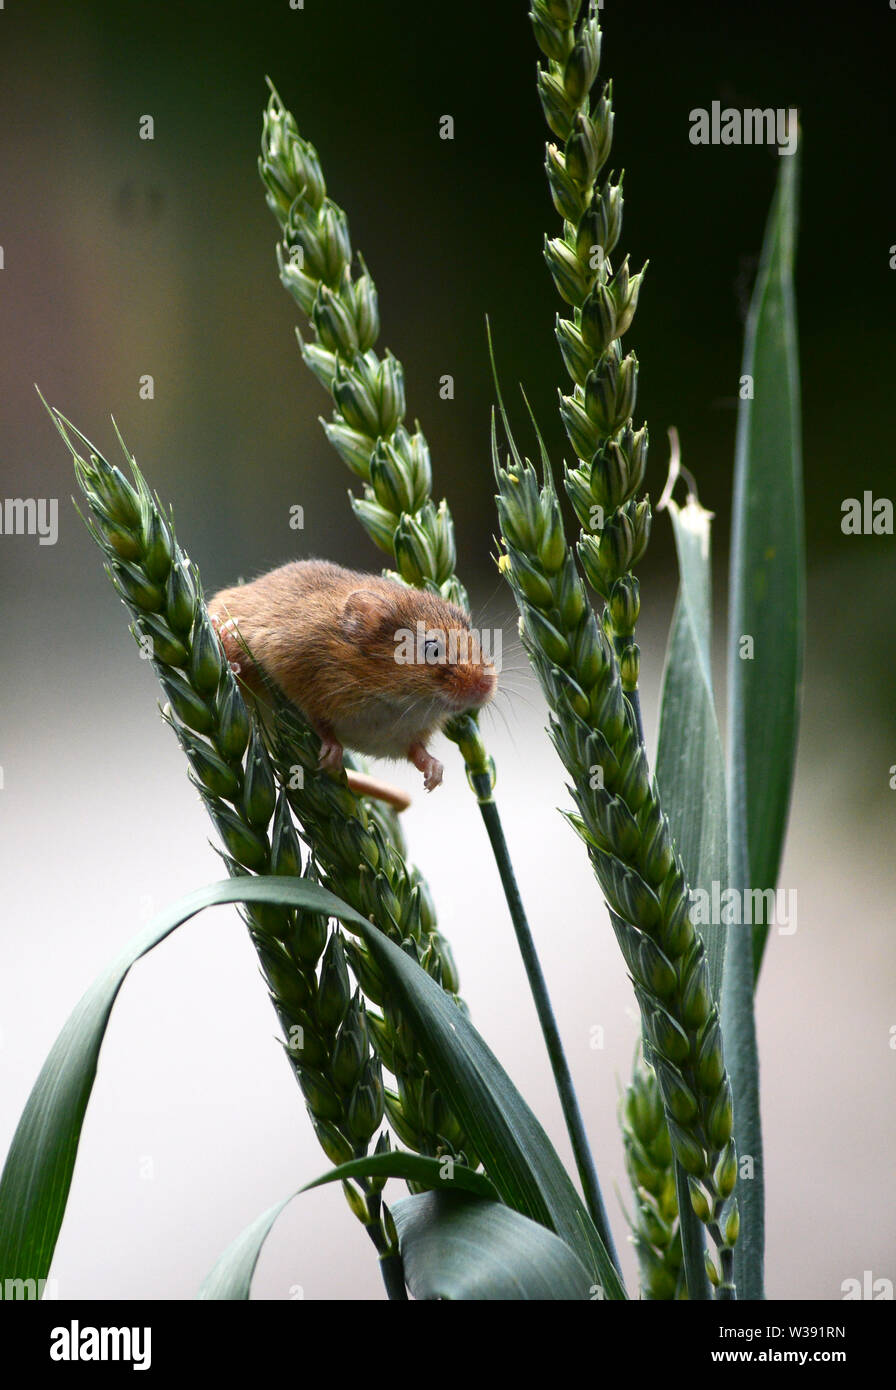 Cosecha de Eurasia Ratón (Micromys minutus) - mirando a través de espigas de trigo Foto de stock